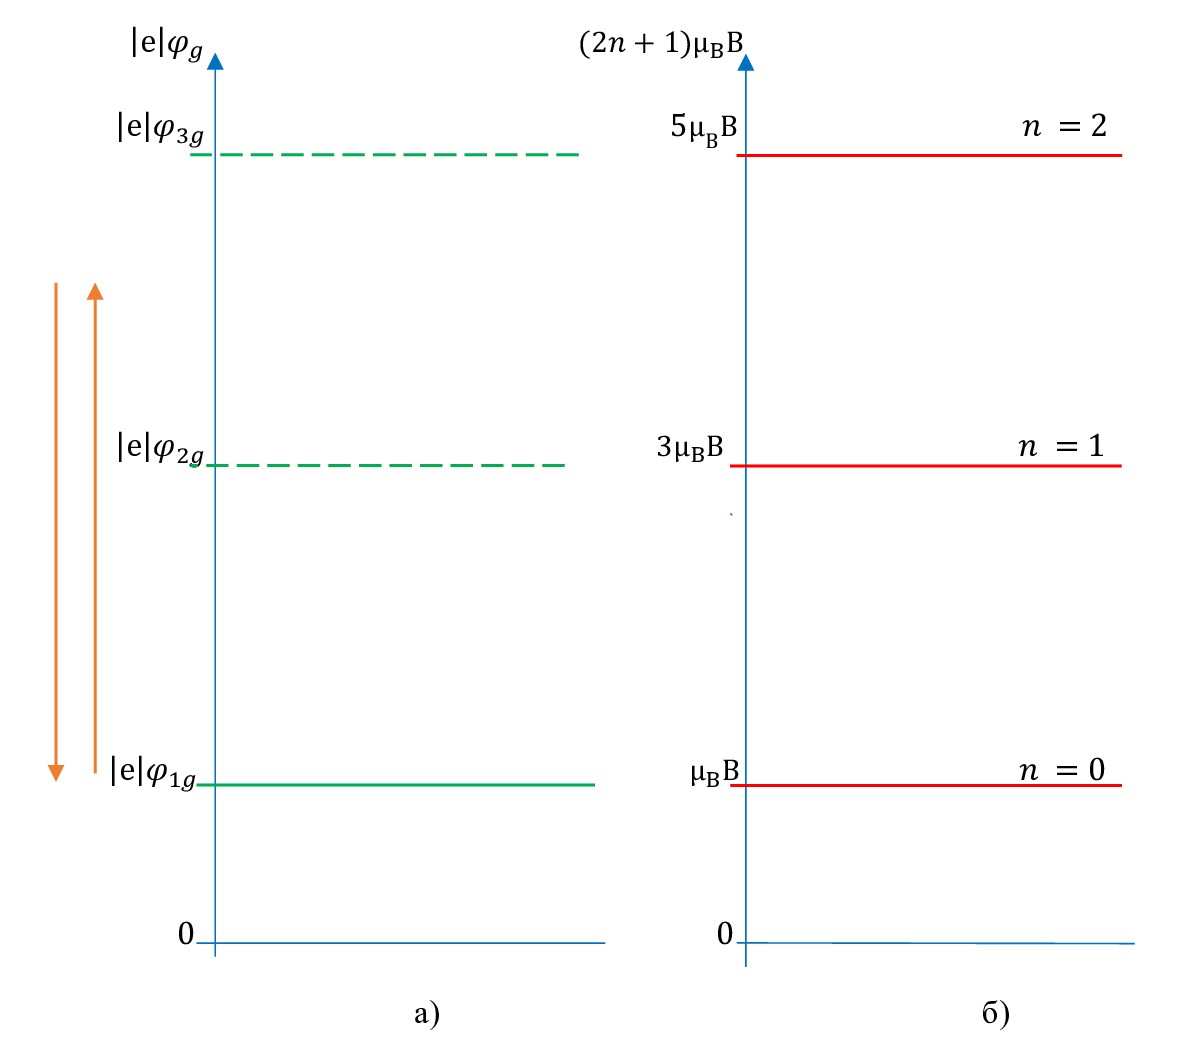 Схематично показана связь между плавным изменением потенциала φg электростатического поля затвора-подложки в зоне проводимости (в 2МЭГ), умноженным на абсолютную величину заряда электрона |e|, и допустимыми значениями энергии электрона в магнитном поле μBB (2n+1) при B=const:а - значение потенциала φg электростатического поля затвора-подложки в зоне проводимости, умноженного на абсолютную величину заряда электрона |e|; б - дискретный энергетический спектр системы 2МЭГ в магнитном поле в соответствии с формулами (24) и (25)